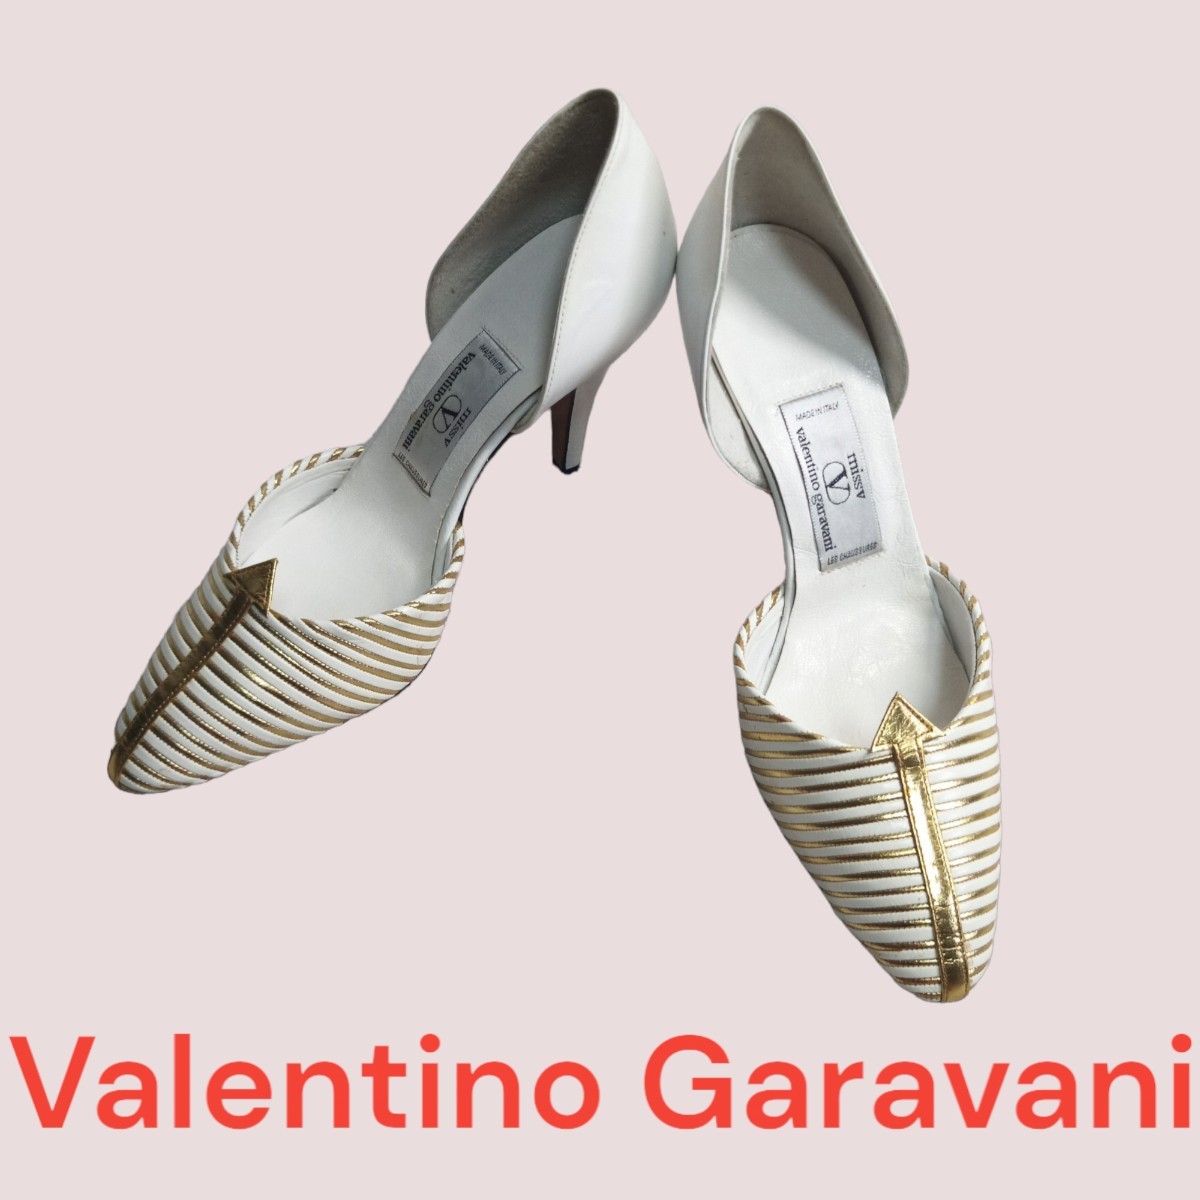 品質が イタリア製 ガラヴァーニ ヴァレンティノ Garavani Valentino